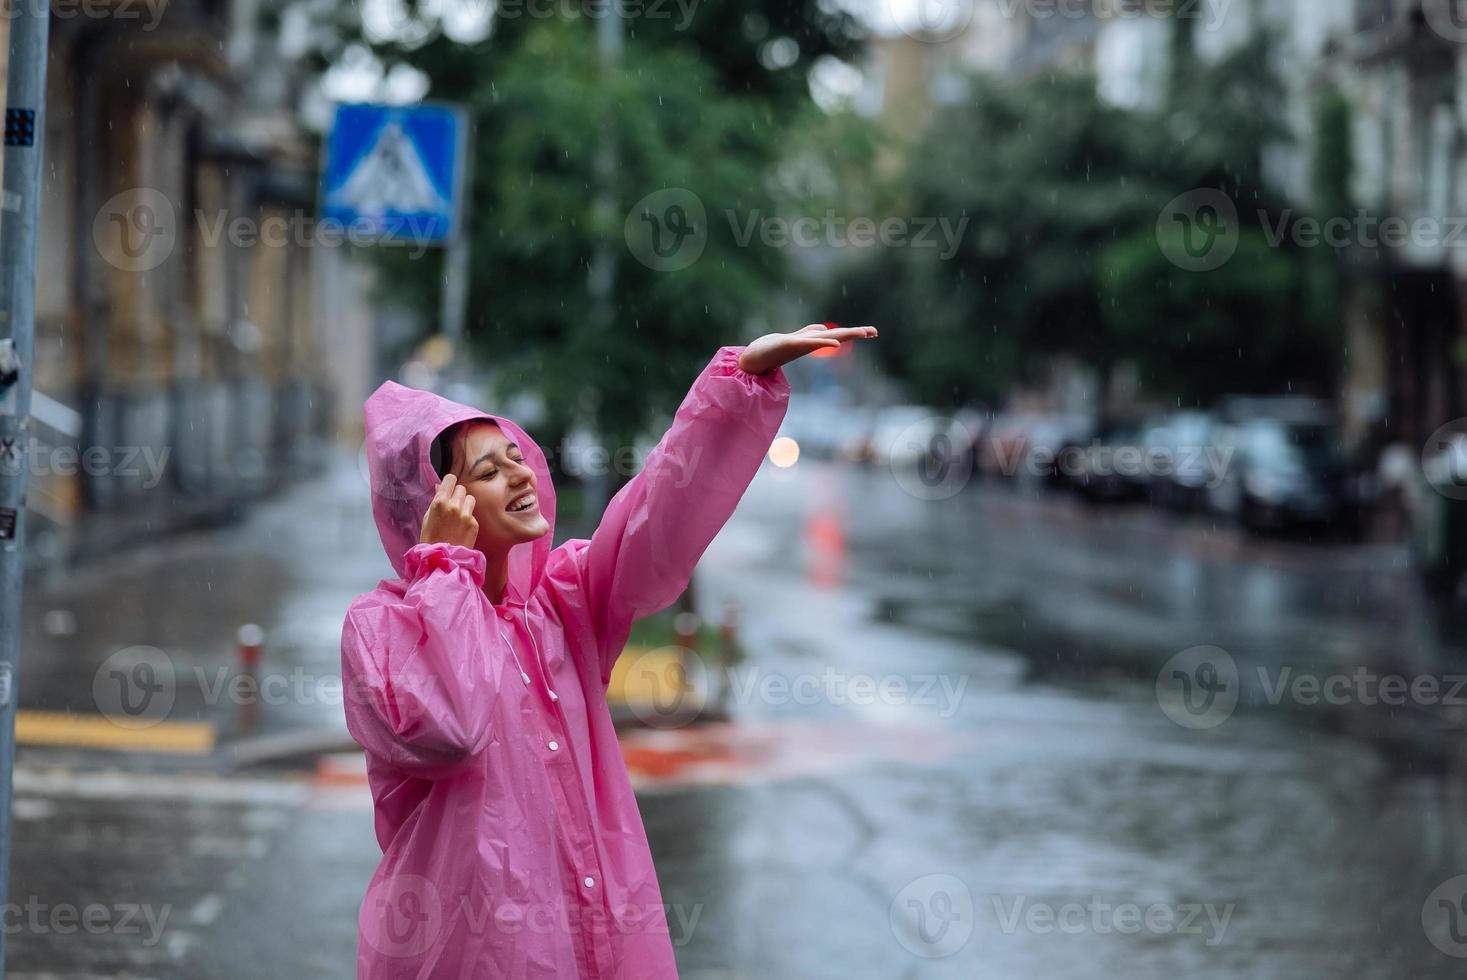 jovem sorridente com capa de chuva enquanto desfruta de um dia chuvoso. foto